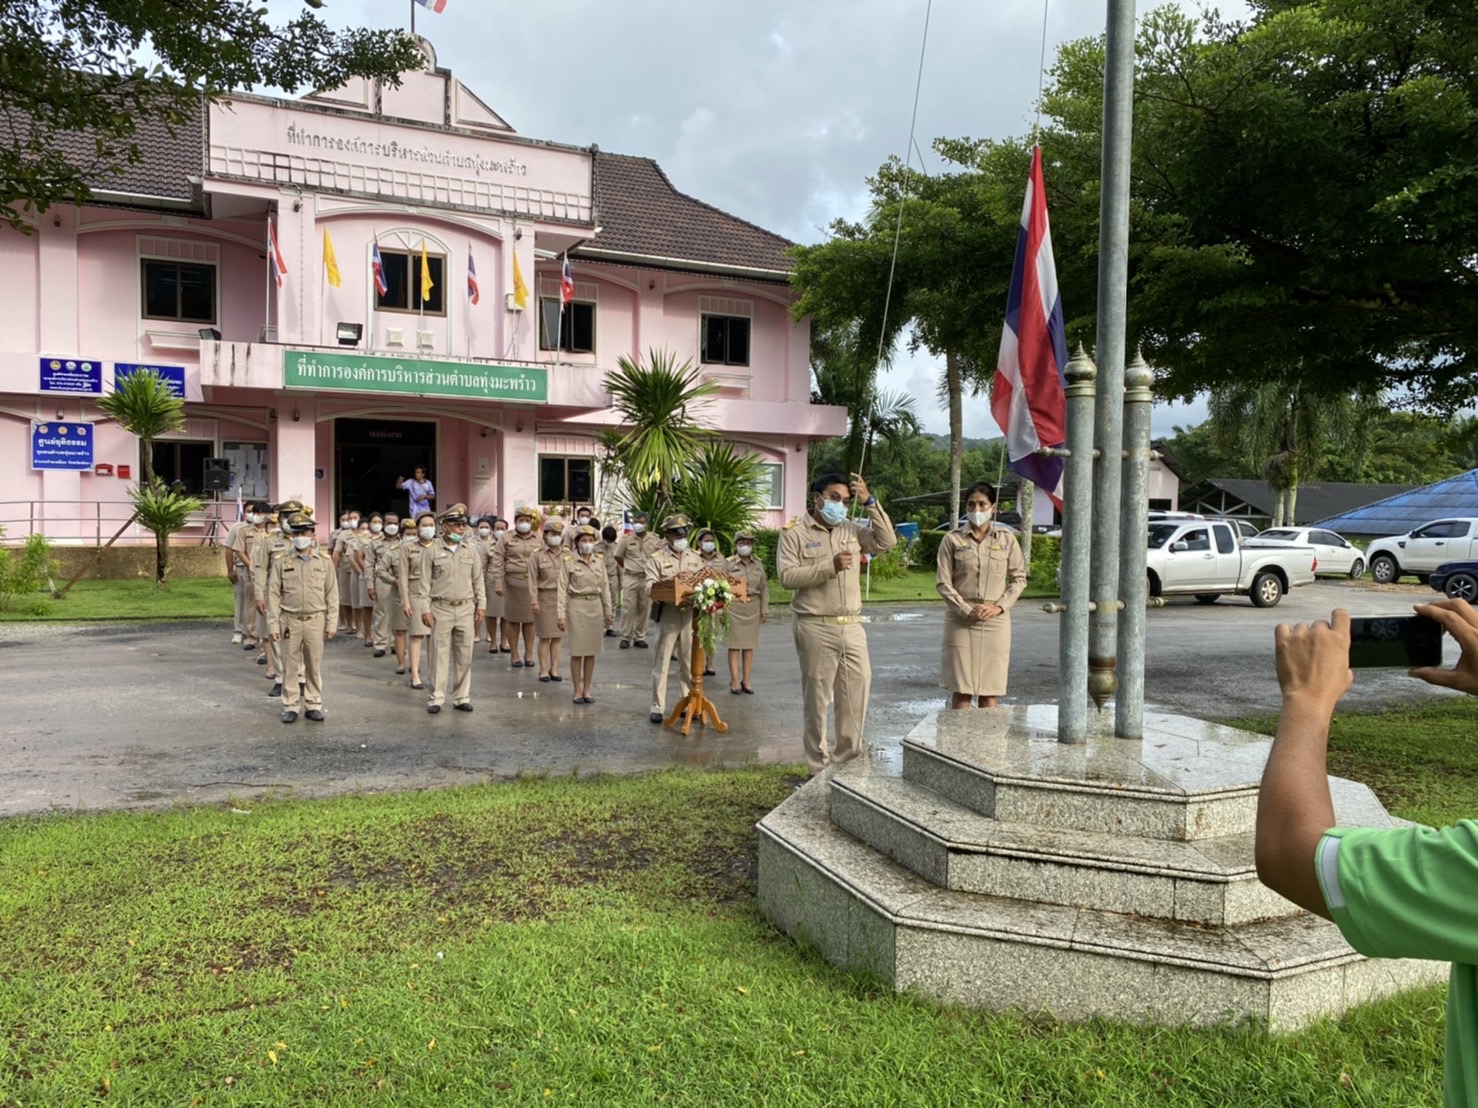 กิจกรรมเคารพธงชาติ และร้องเพลงชาติ เนื่องในวันพระราชทานธงชาติไทย